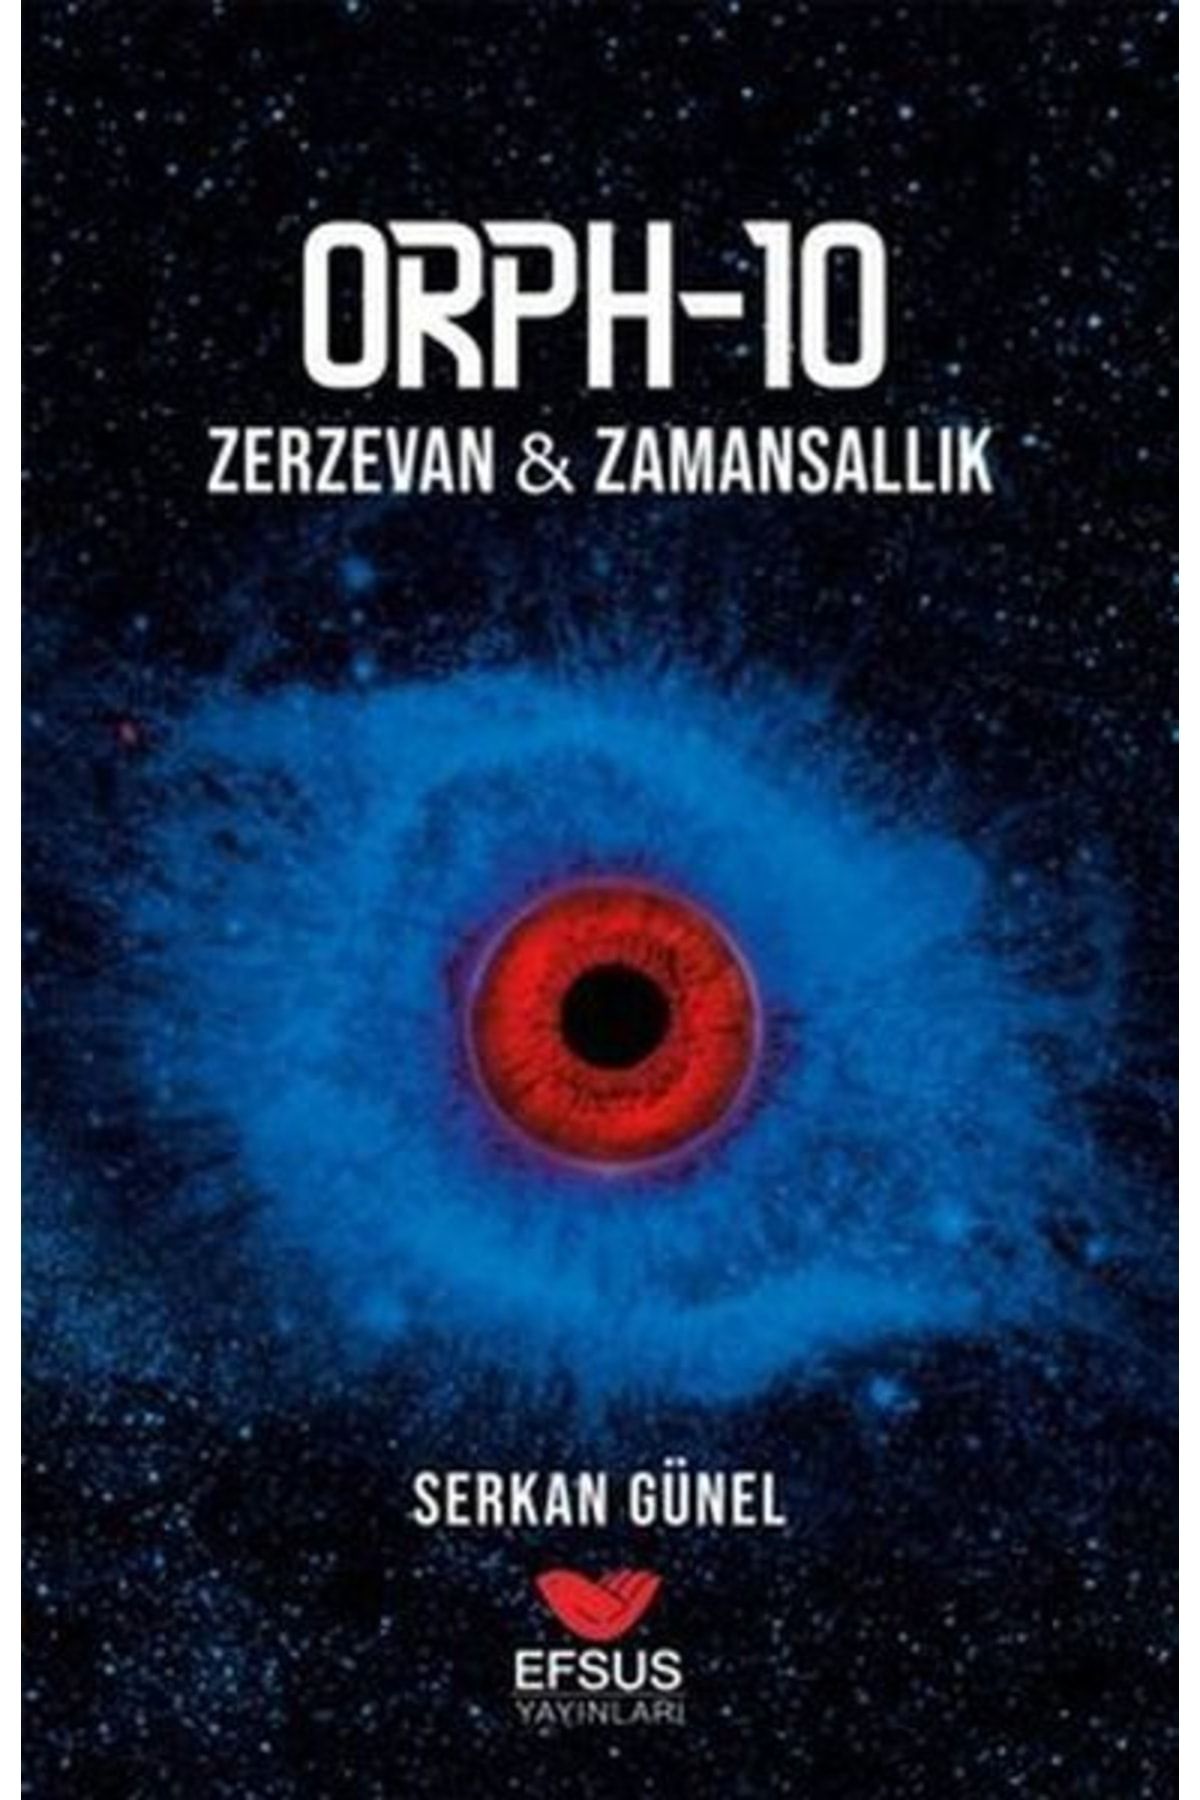 Efsus Yayınları Orph-10 Zerzevan - Zamansallık